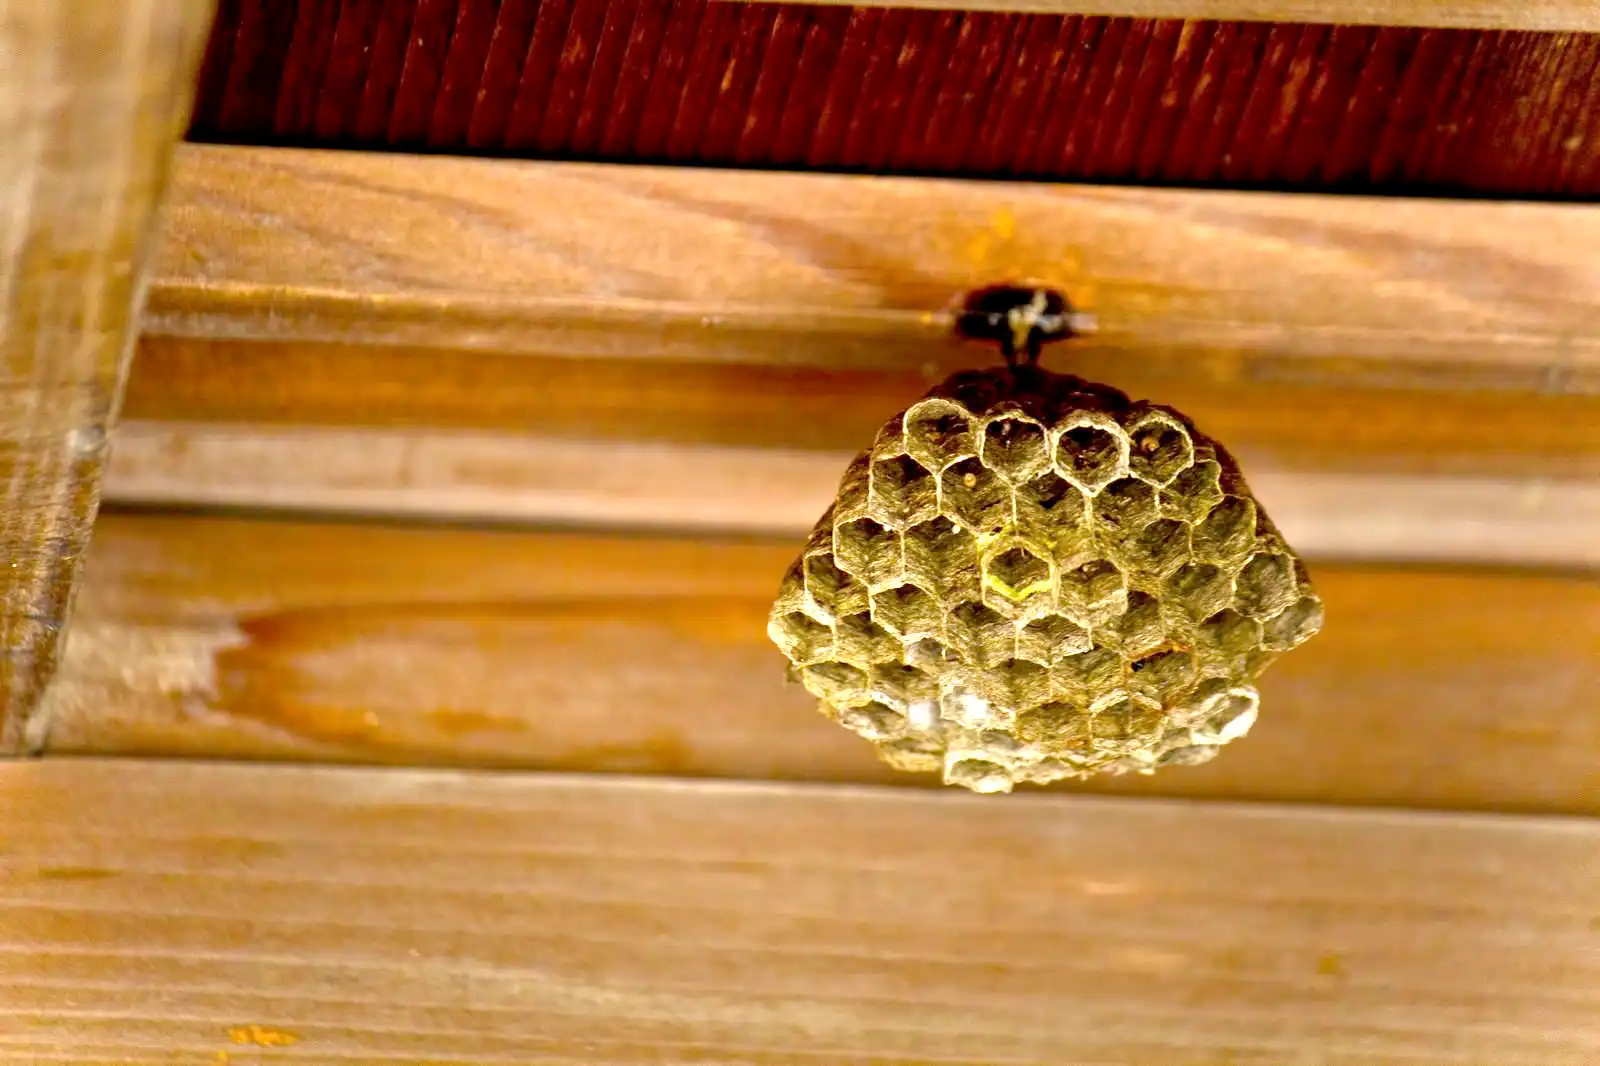 夕方の蜂の巣駆除で「最も効率の高い」ハチの種類と駆除方法を完全解説